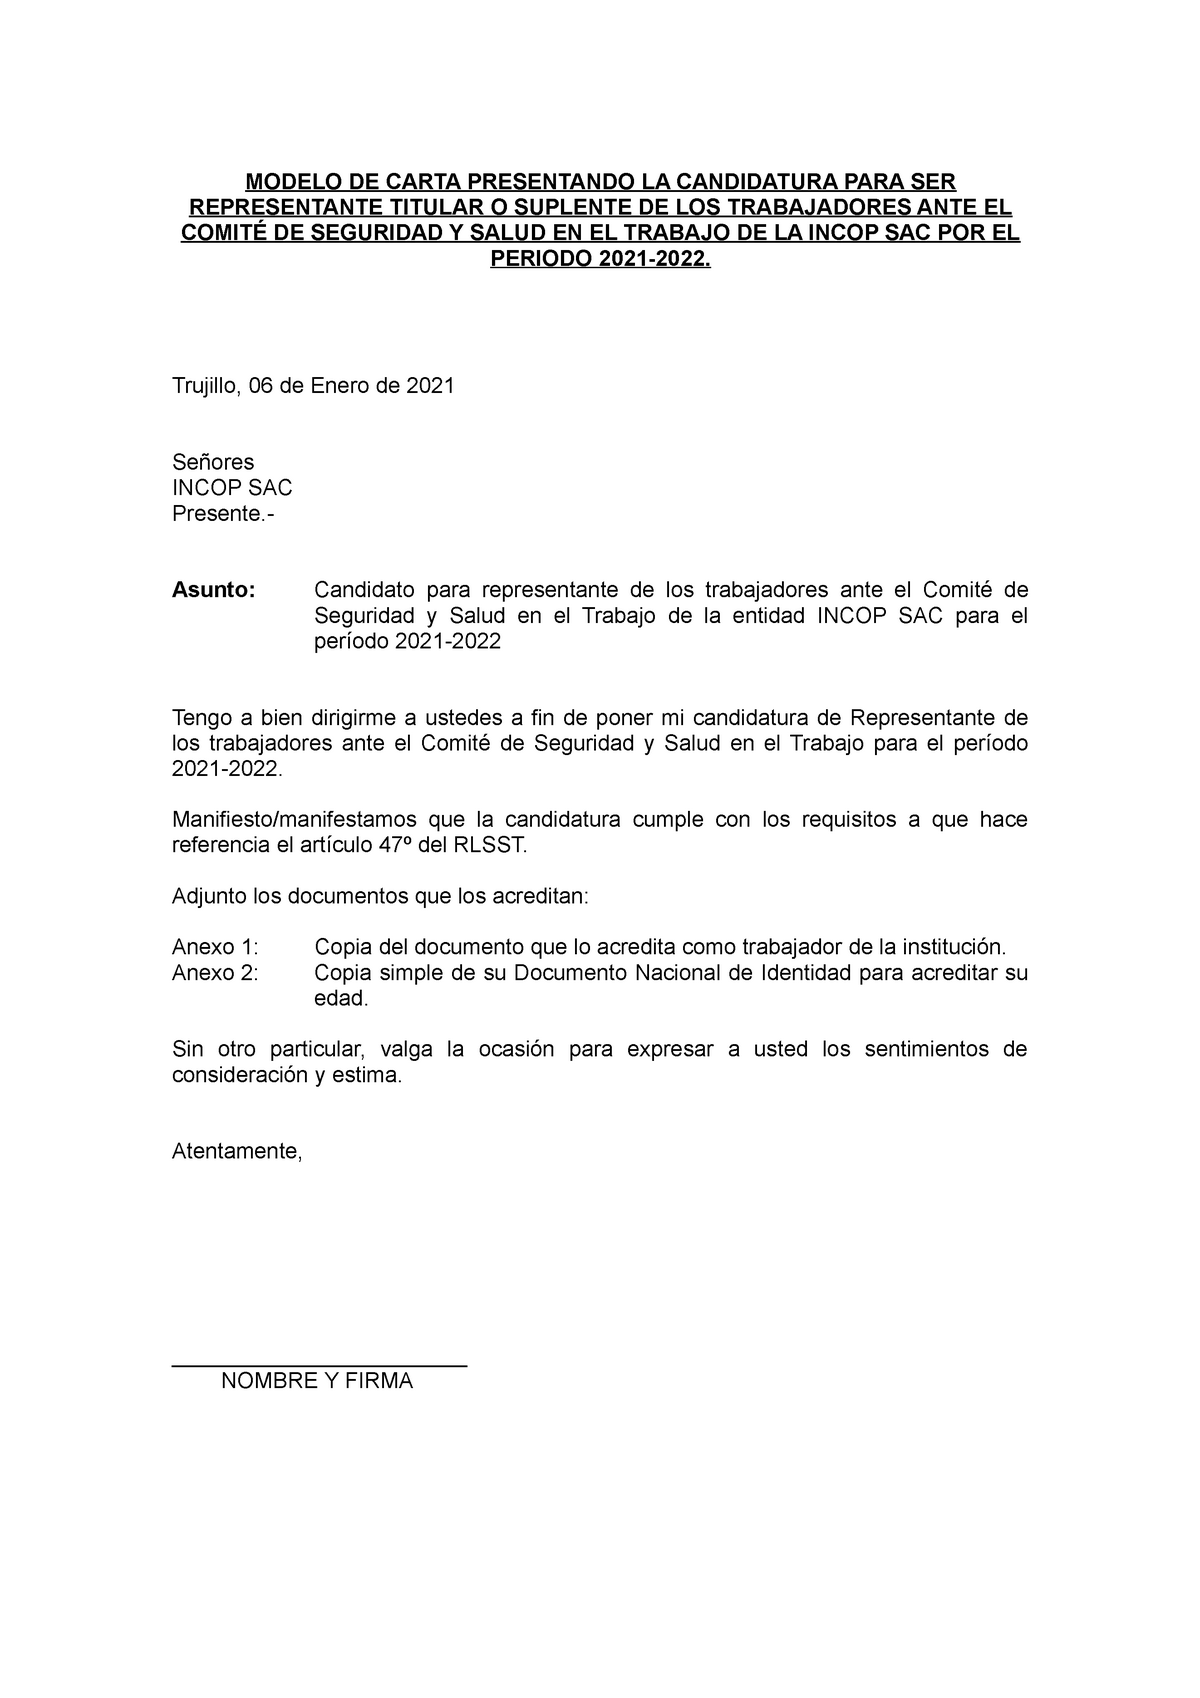 2. Carta presentando la candidatura-7 14 - MODELO DE CARTA PRESENTANDO ...